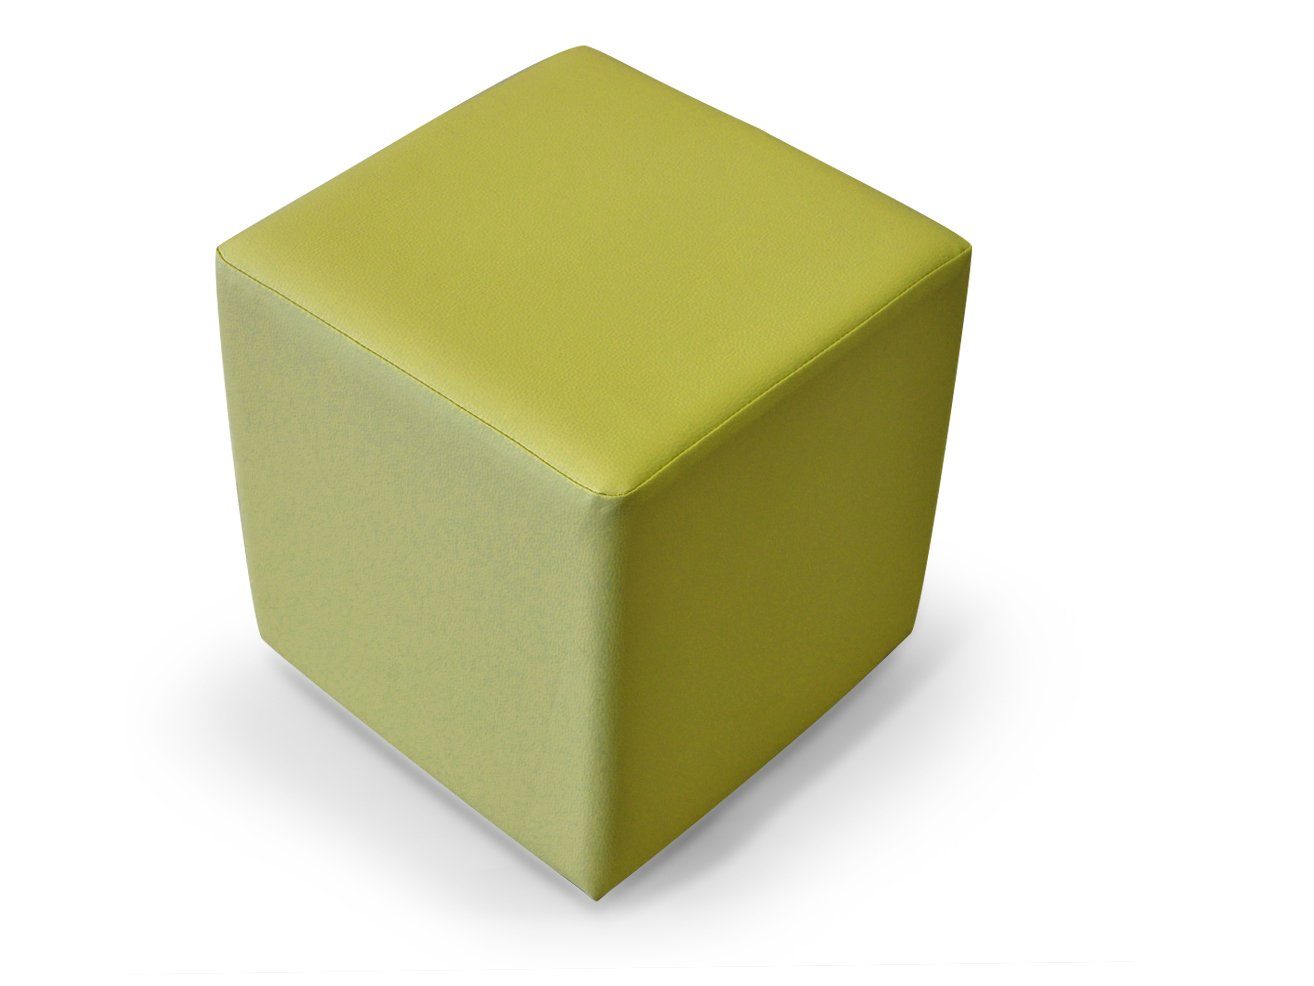 Moebel-Eins Sessel KUBUS Sitzwürfel 48x43x43, KUBUS Bequemer Sitzwürfel, Material Kunstleder, 48x43x43 cm Bandscheibenwürfel grün